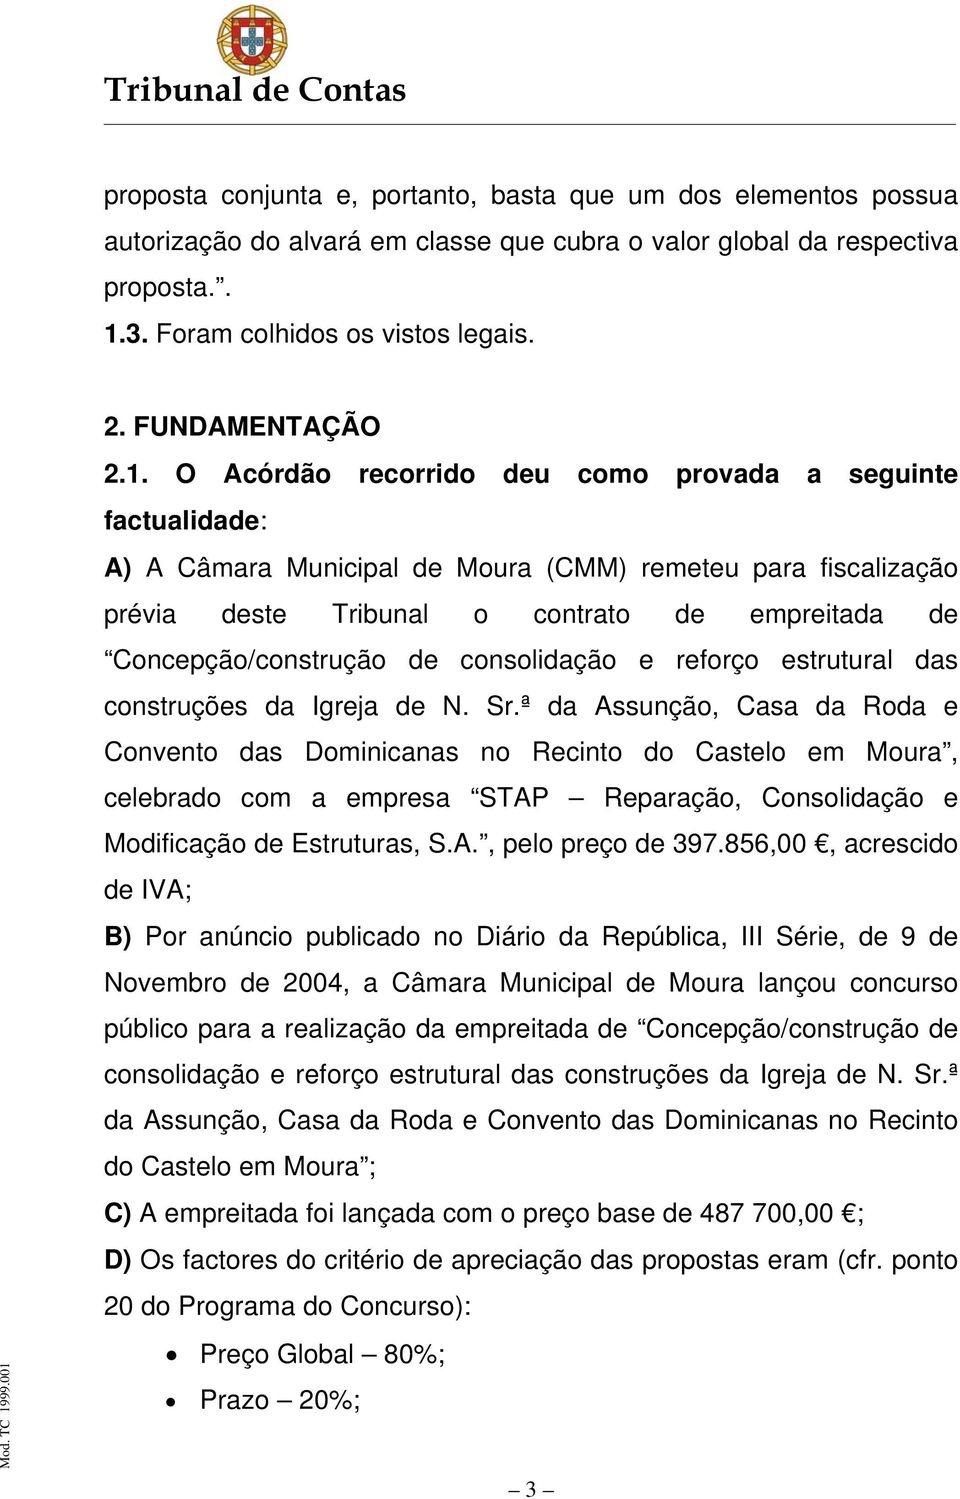 O Acórdão recorrido deu como provada a seguinte factualidade: A) A Câmara Municipal de Moura (CMM) remeteu para fiscalização prévia deste Tribunal o contrato de empreitada de Concepção/construção de